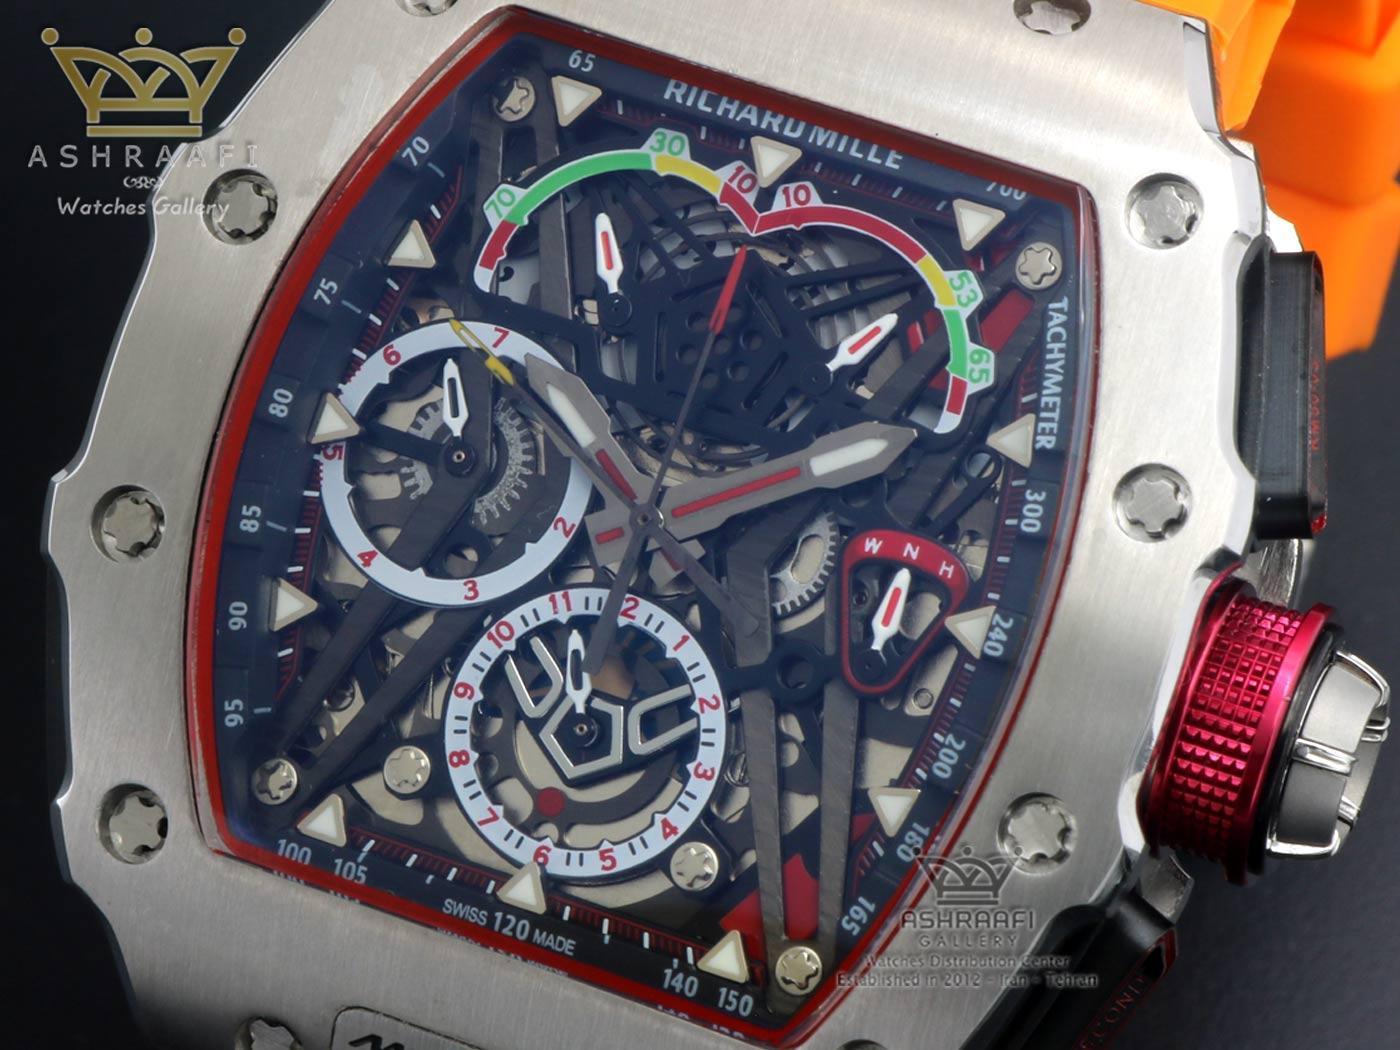 صفحه ساعت ریچارد میل مدل Richard Mille RM50-0301 OS